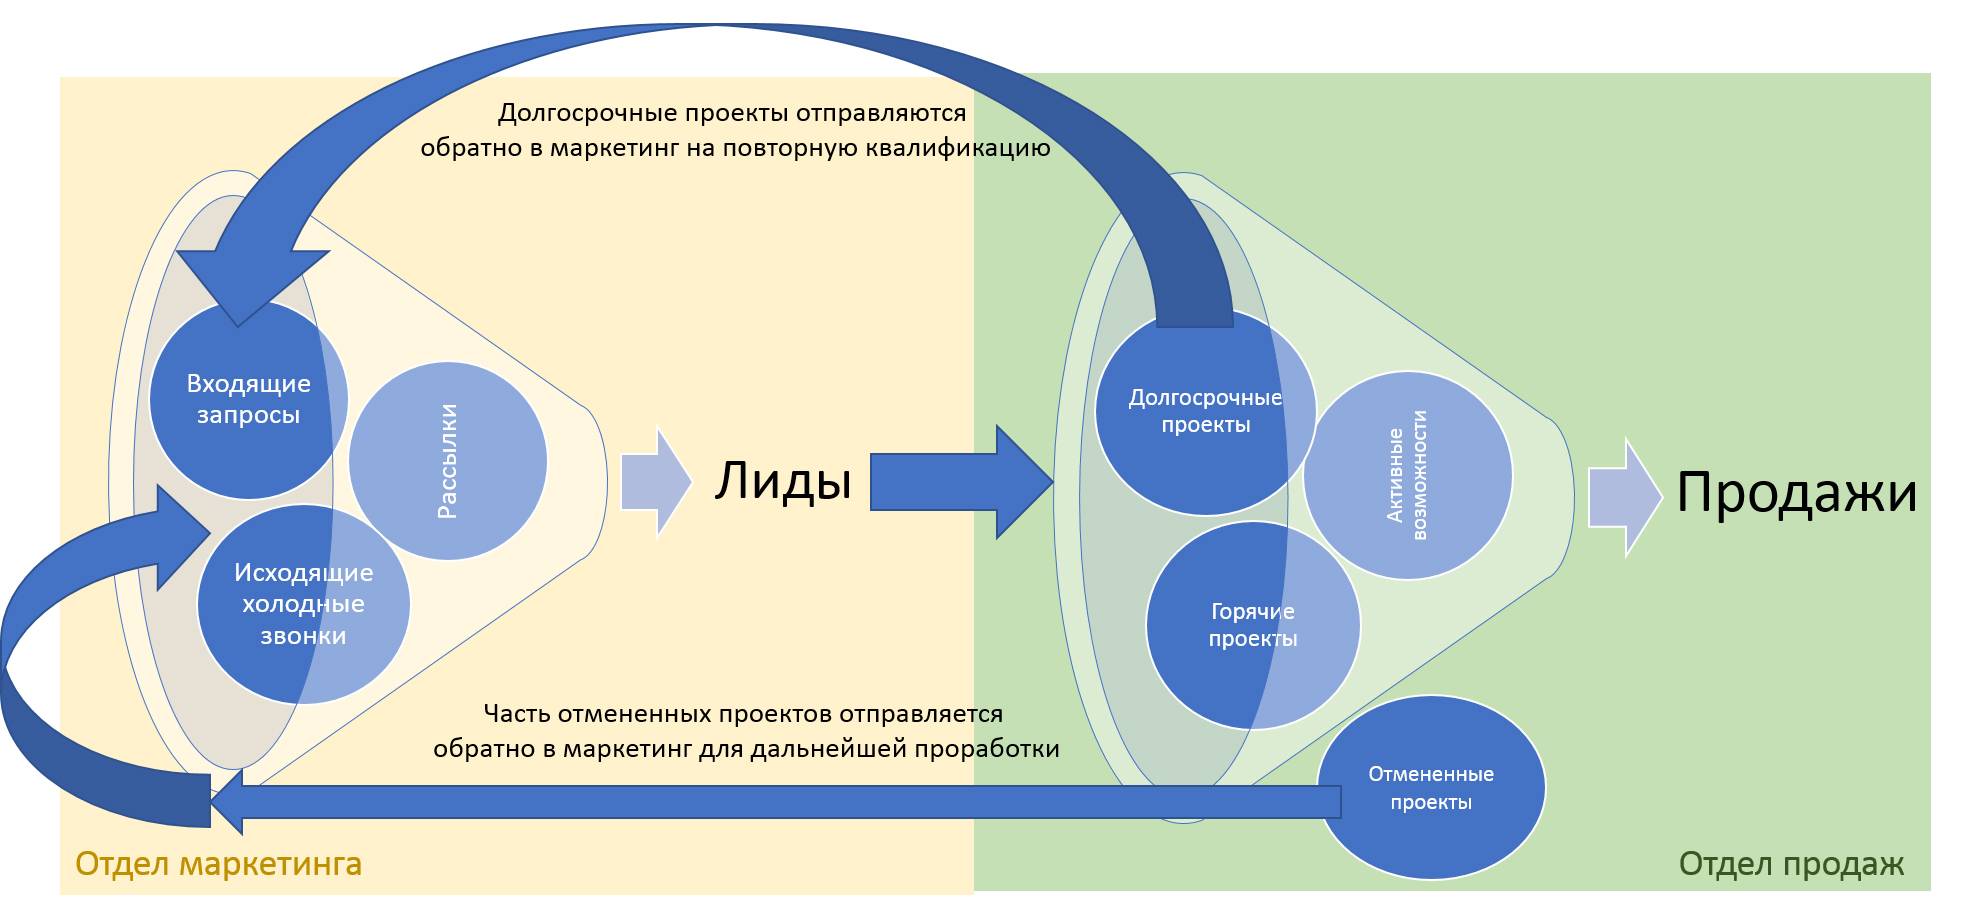 Сервис сбора обратной связи: маст-хев современного руководителя | bankhys.ru - банки, бизнес и экономика для всех.